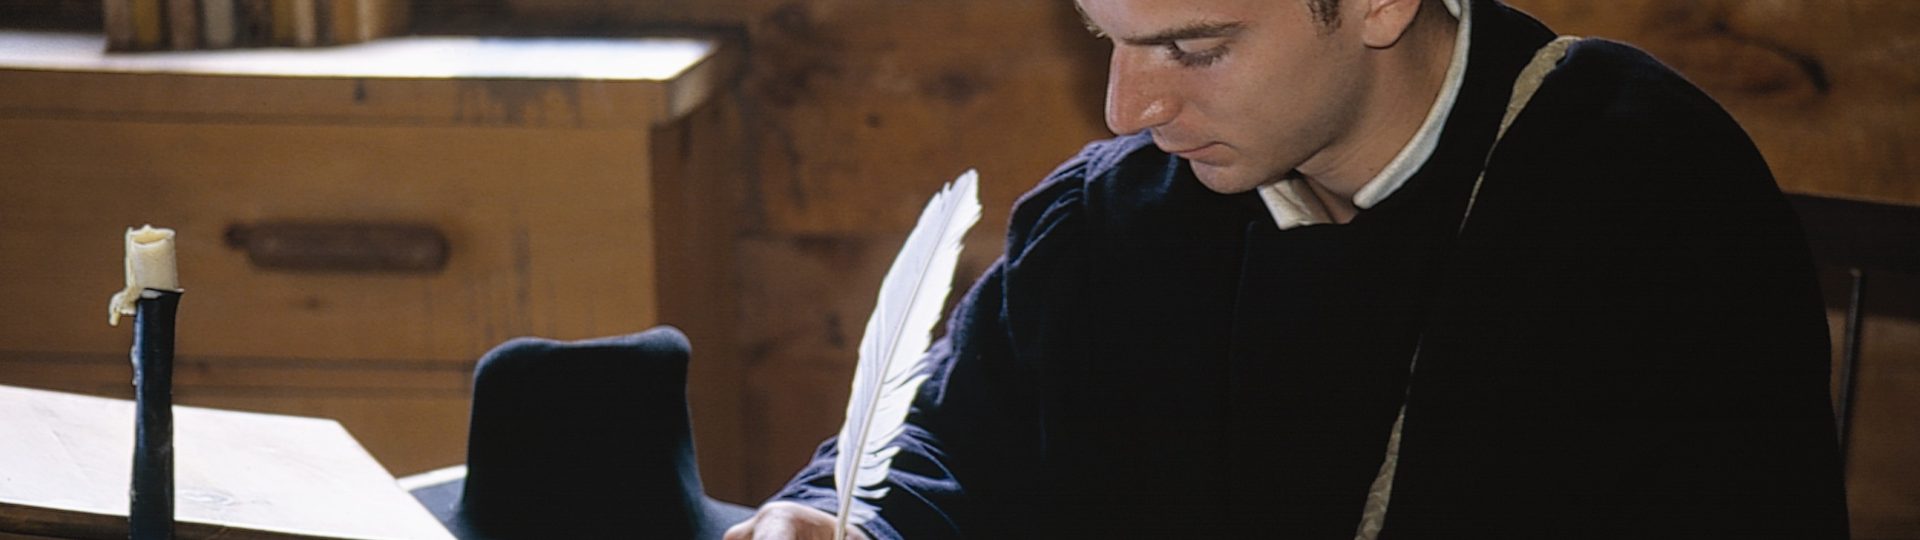 Un interprète historique, habillé en costume de jésuite, à écrire avec une plume et de l'encre.